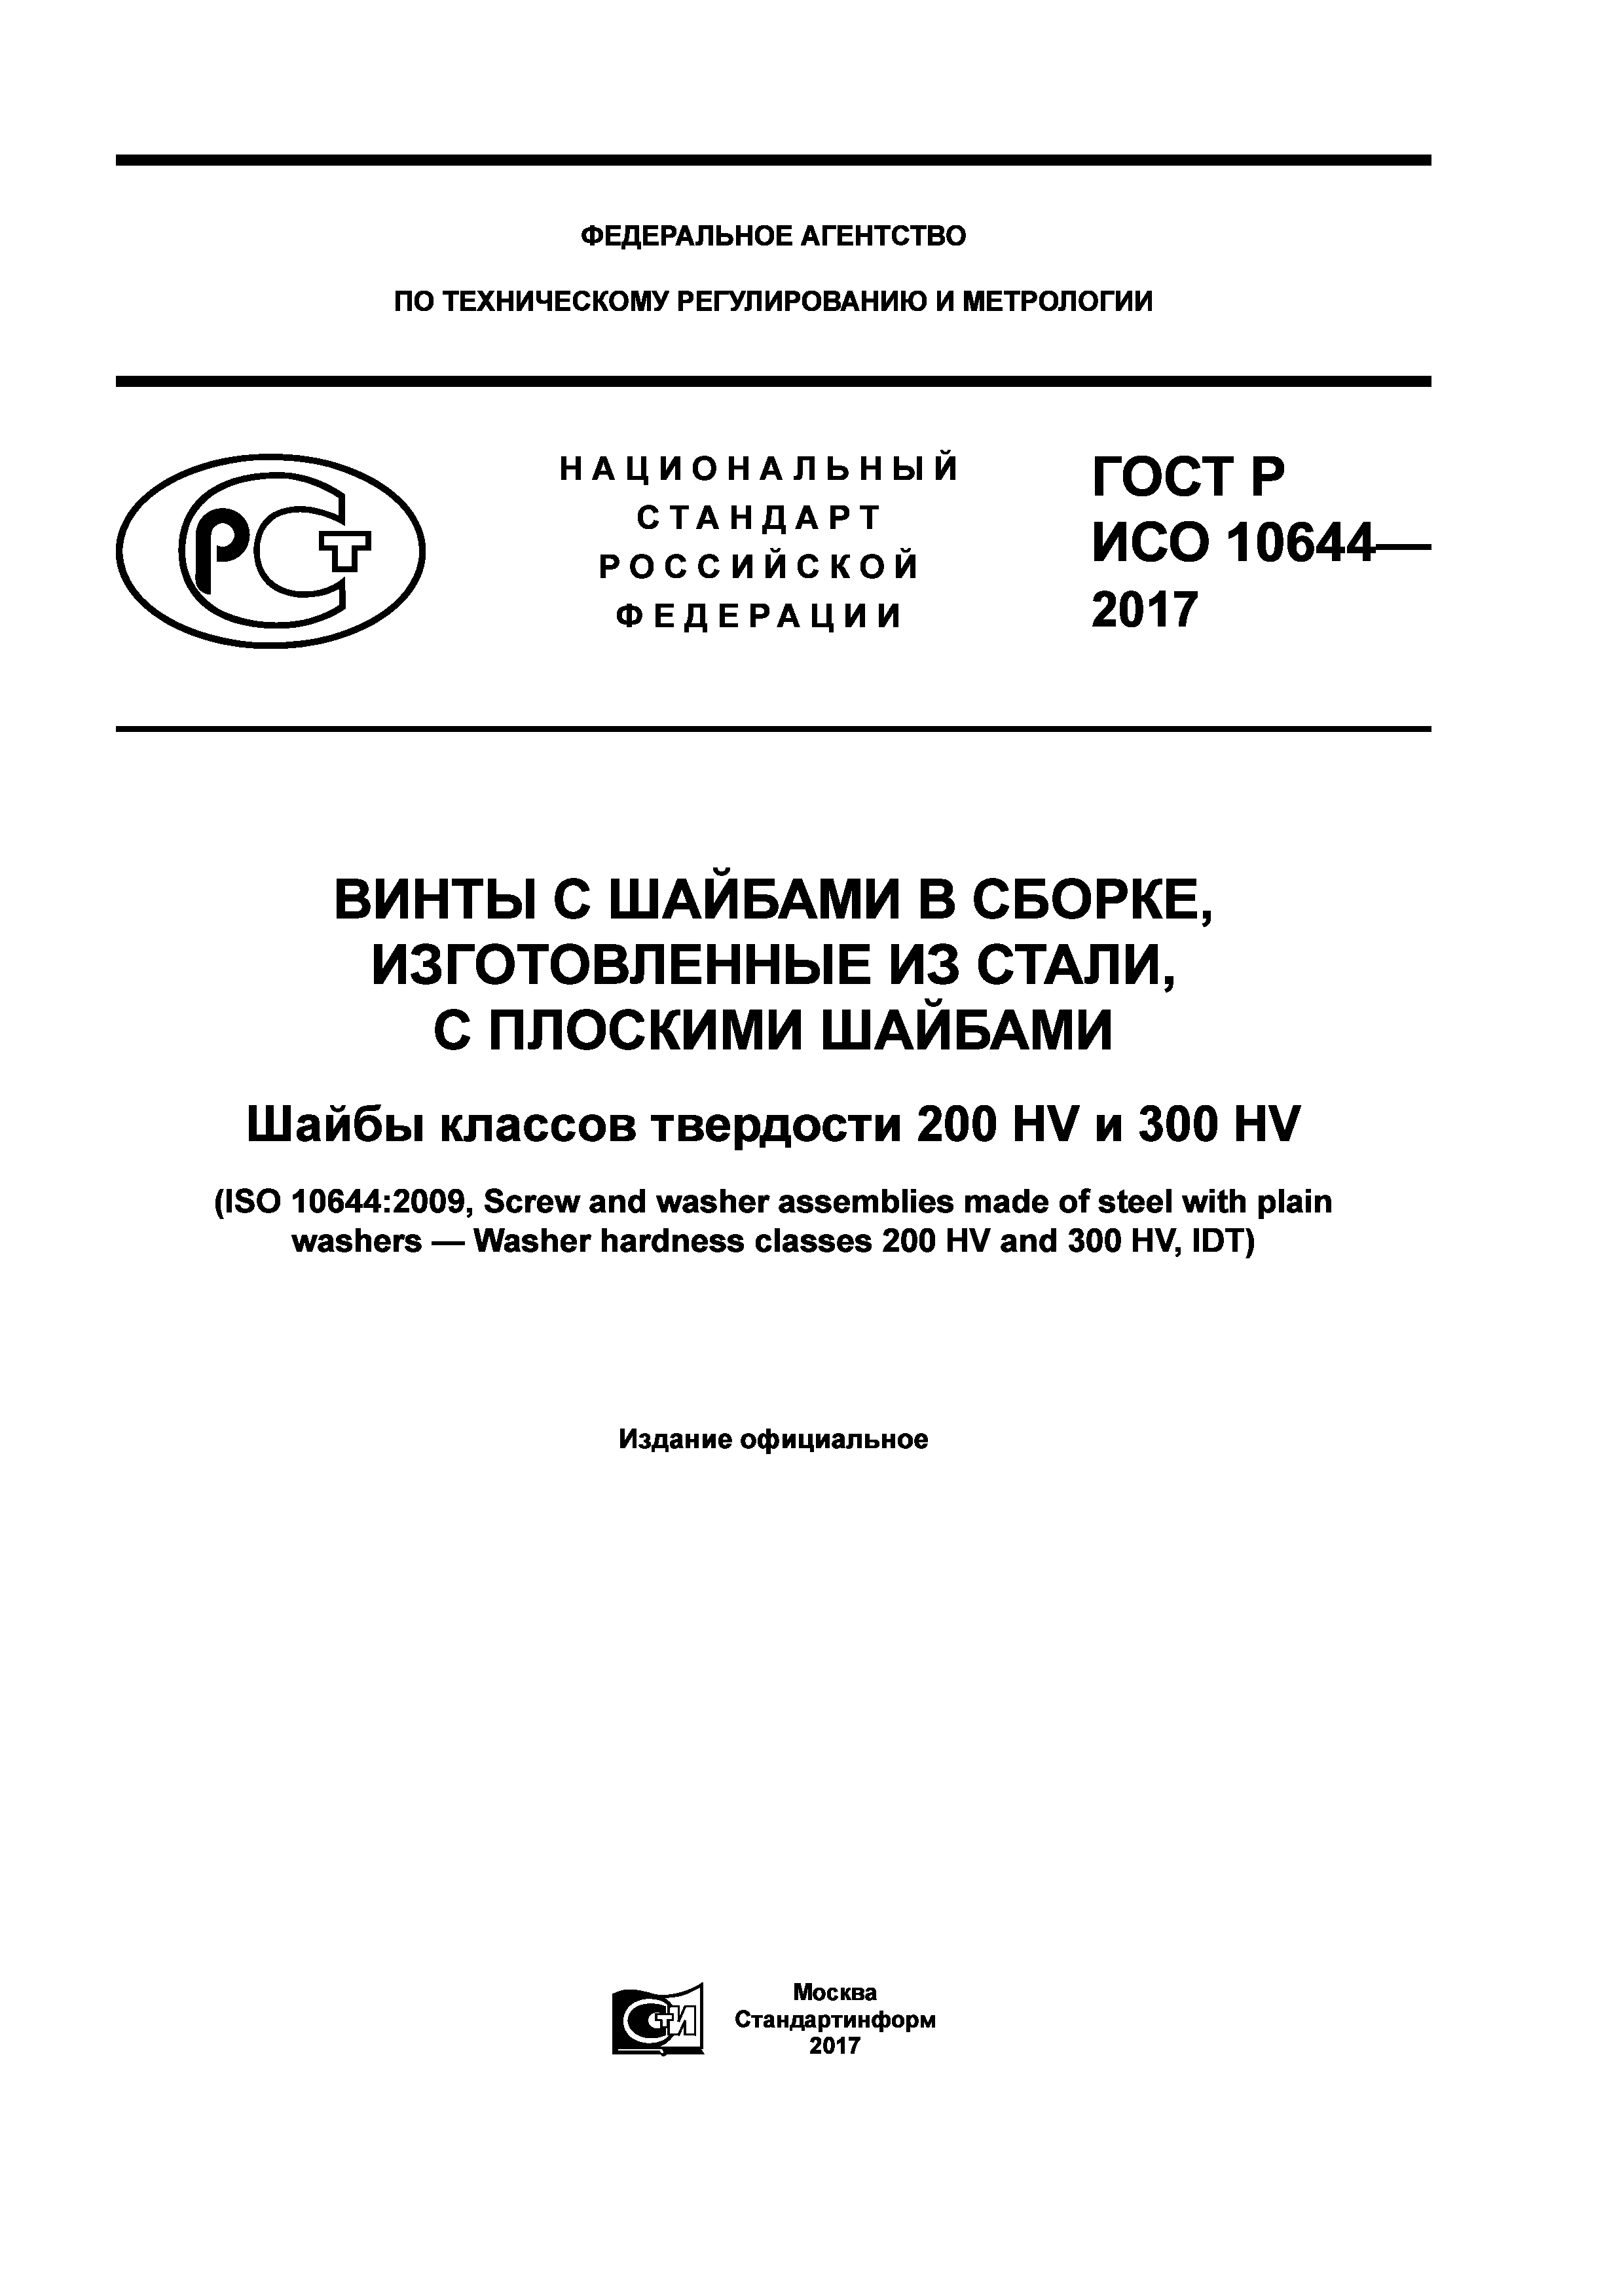 ГОСТ Р ИСО 10644-2017